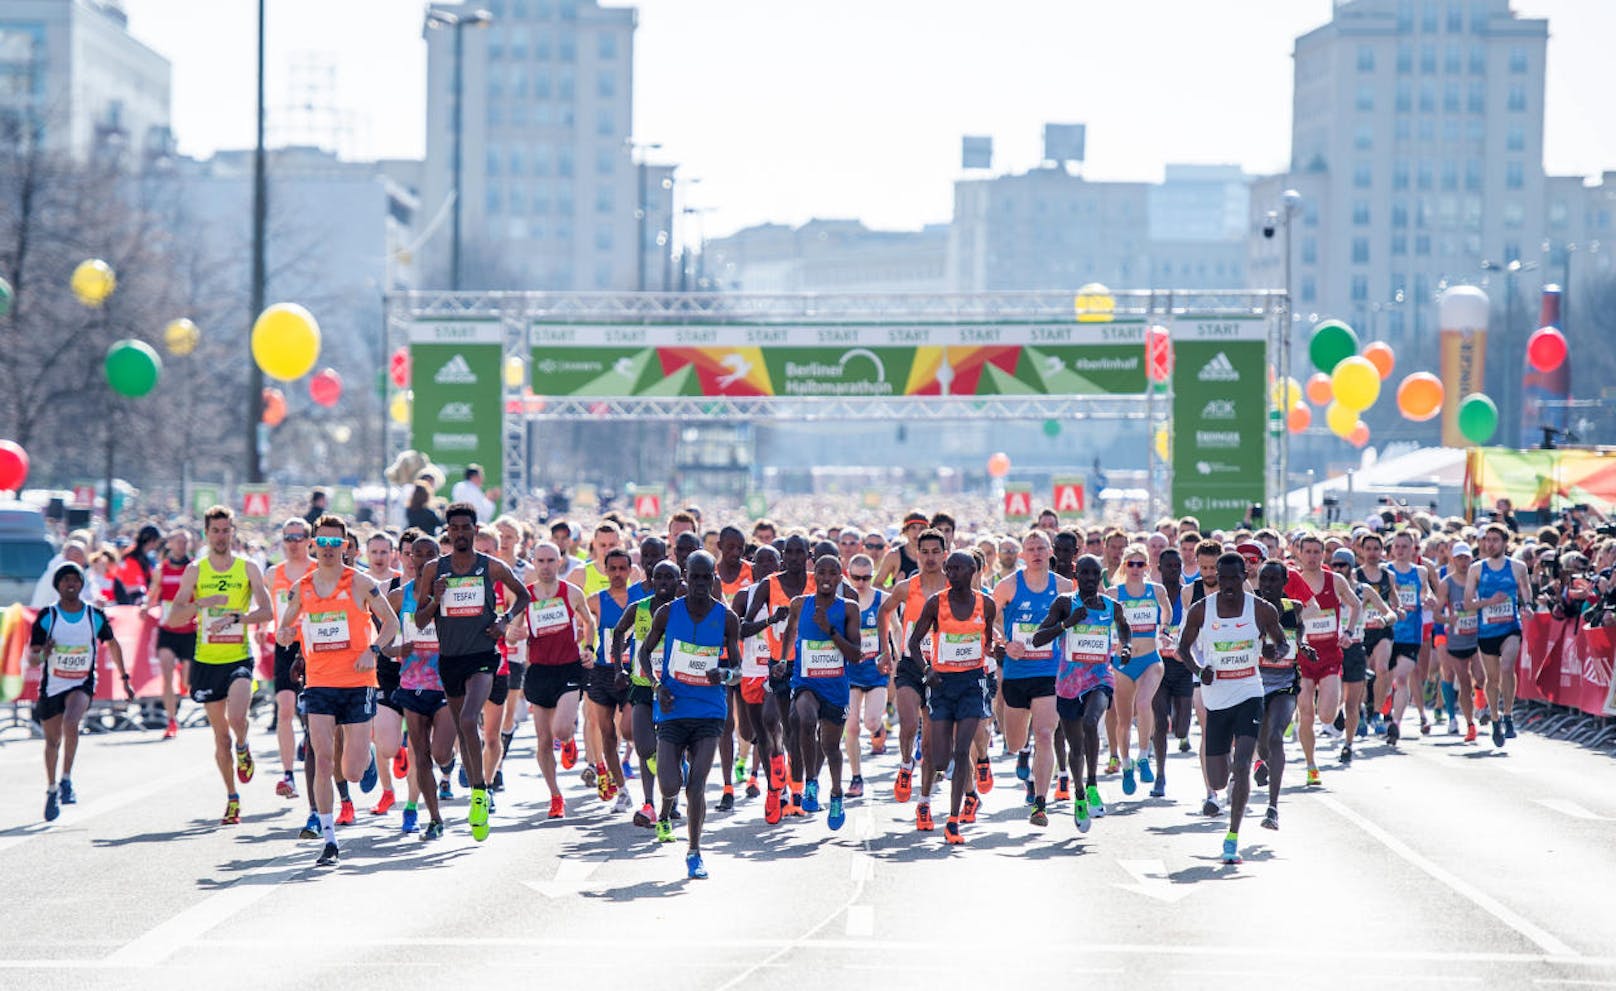 Rund 32.000 Läufer hatten sich für den diesjährigen 38. Berliner Halbmarathon registriert - ein neuer Rekord. Ein Anschlag in einer solchen Menschenmasse hätte verheerende Folgen haben können.